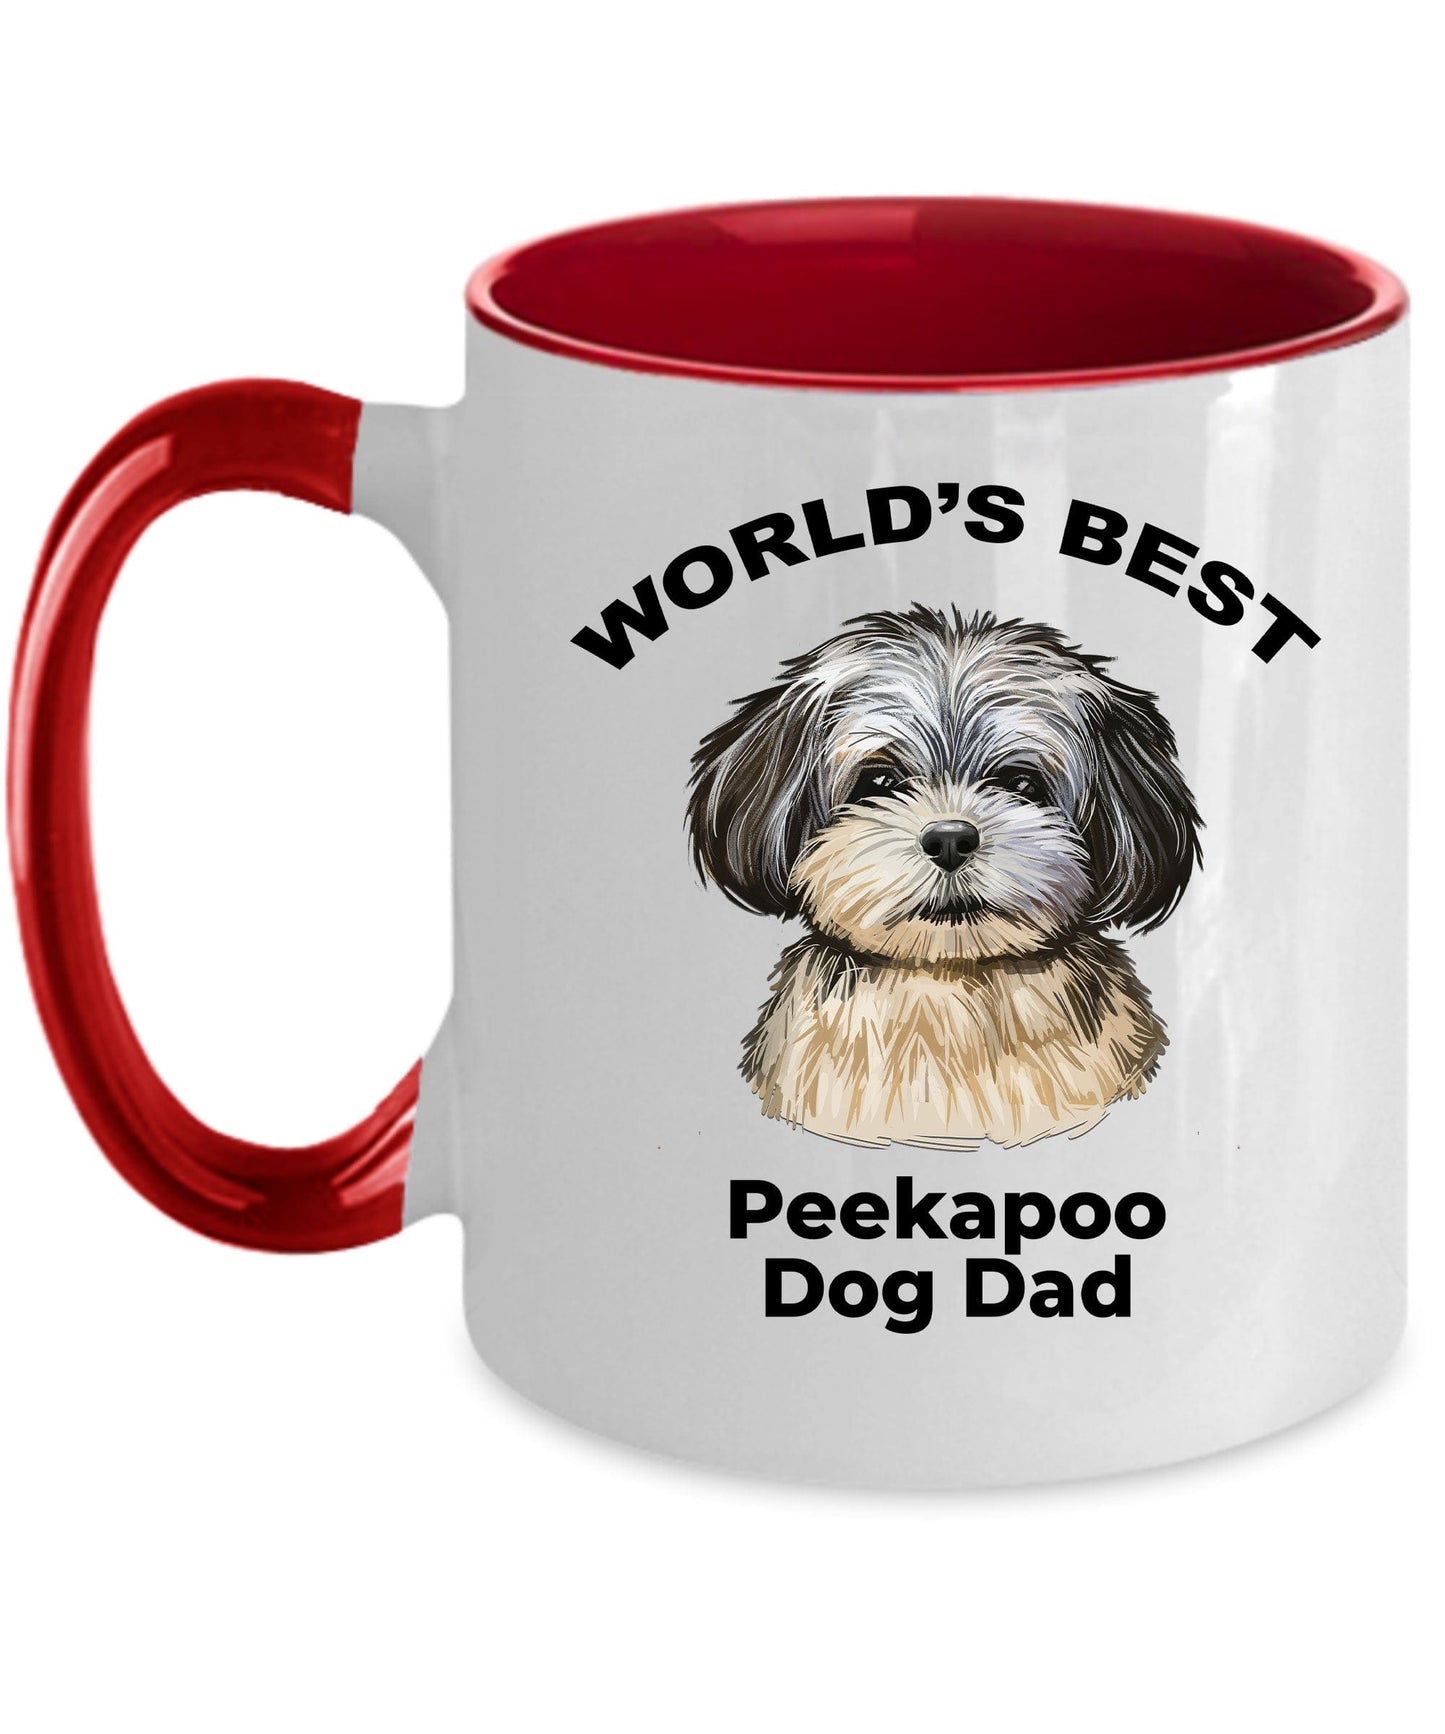 Peekapoo Best Dog Dad Coffee Mug